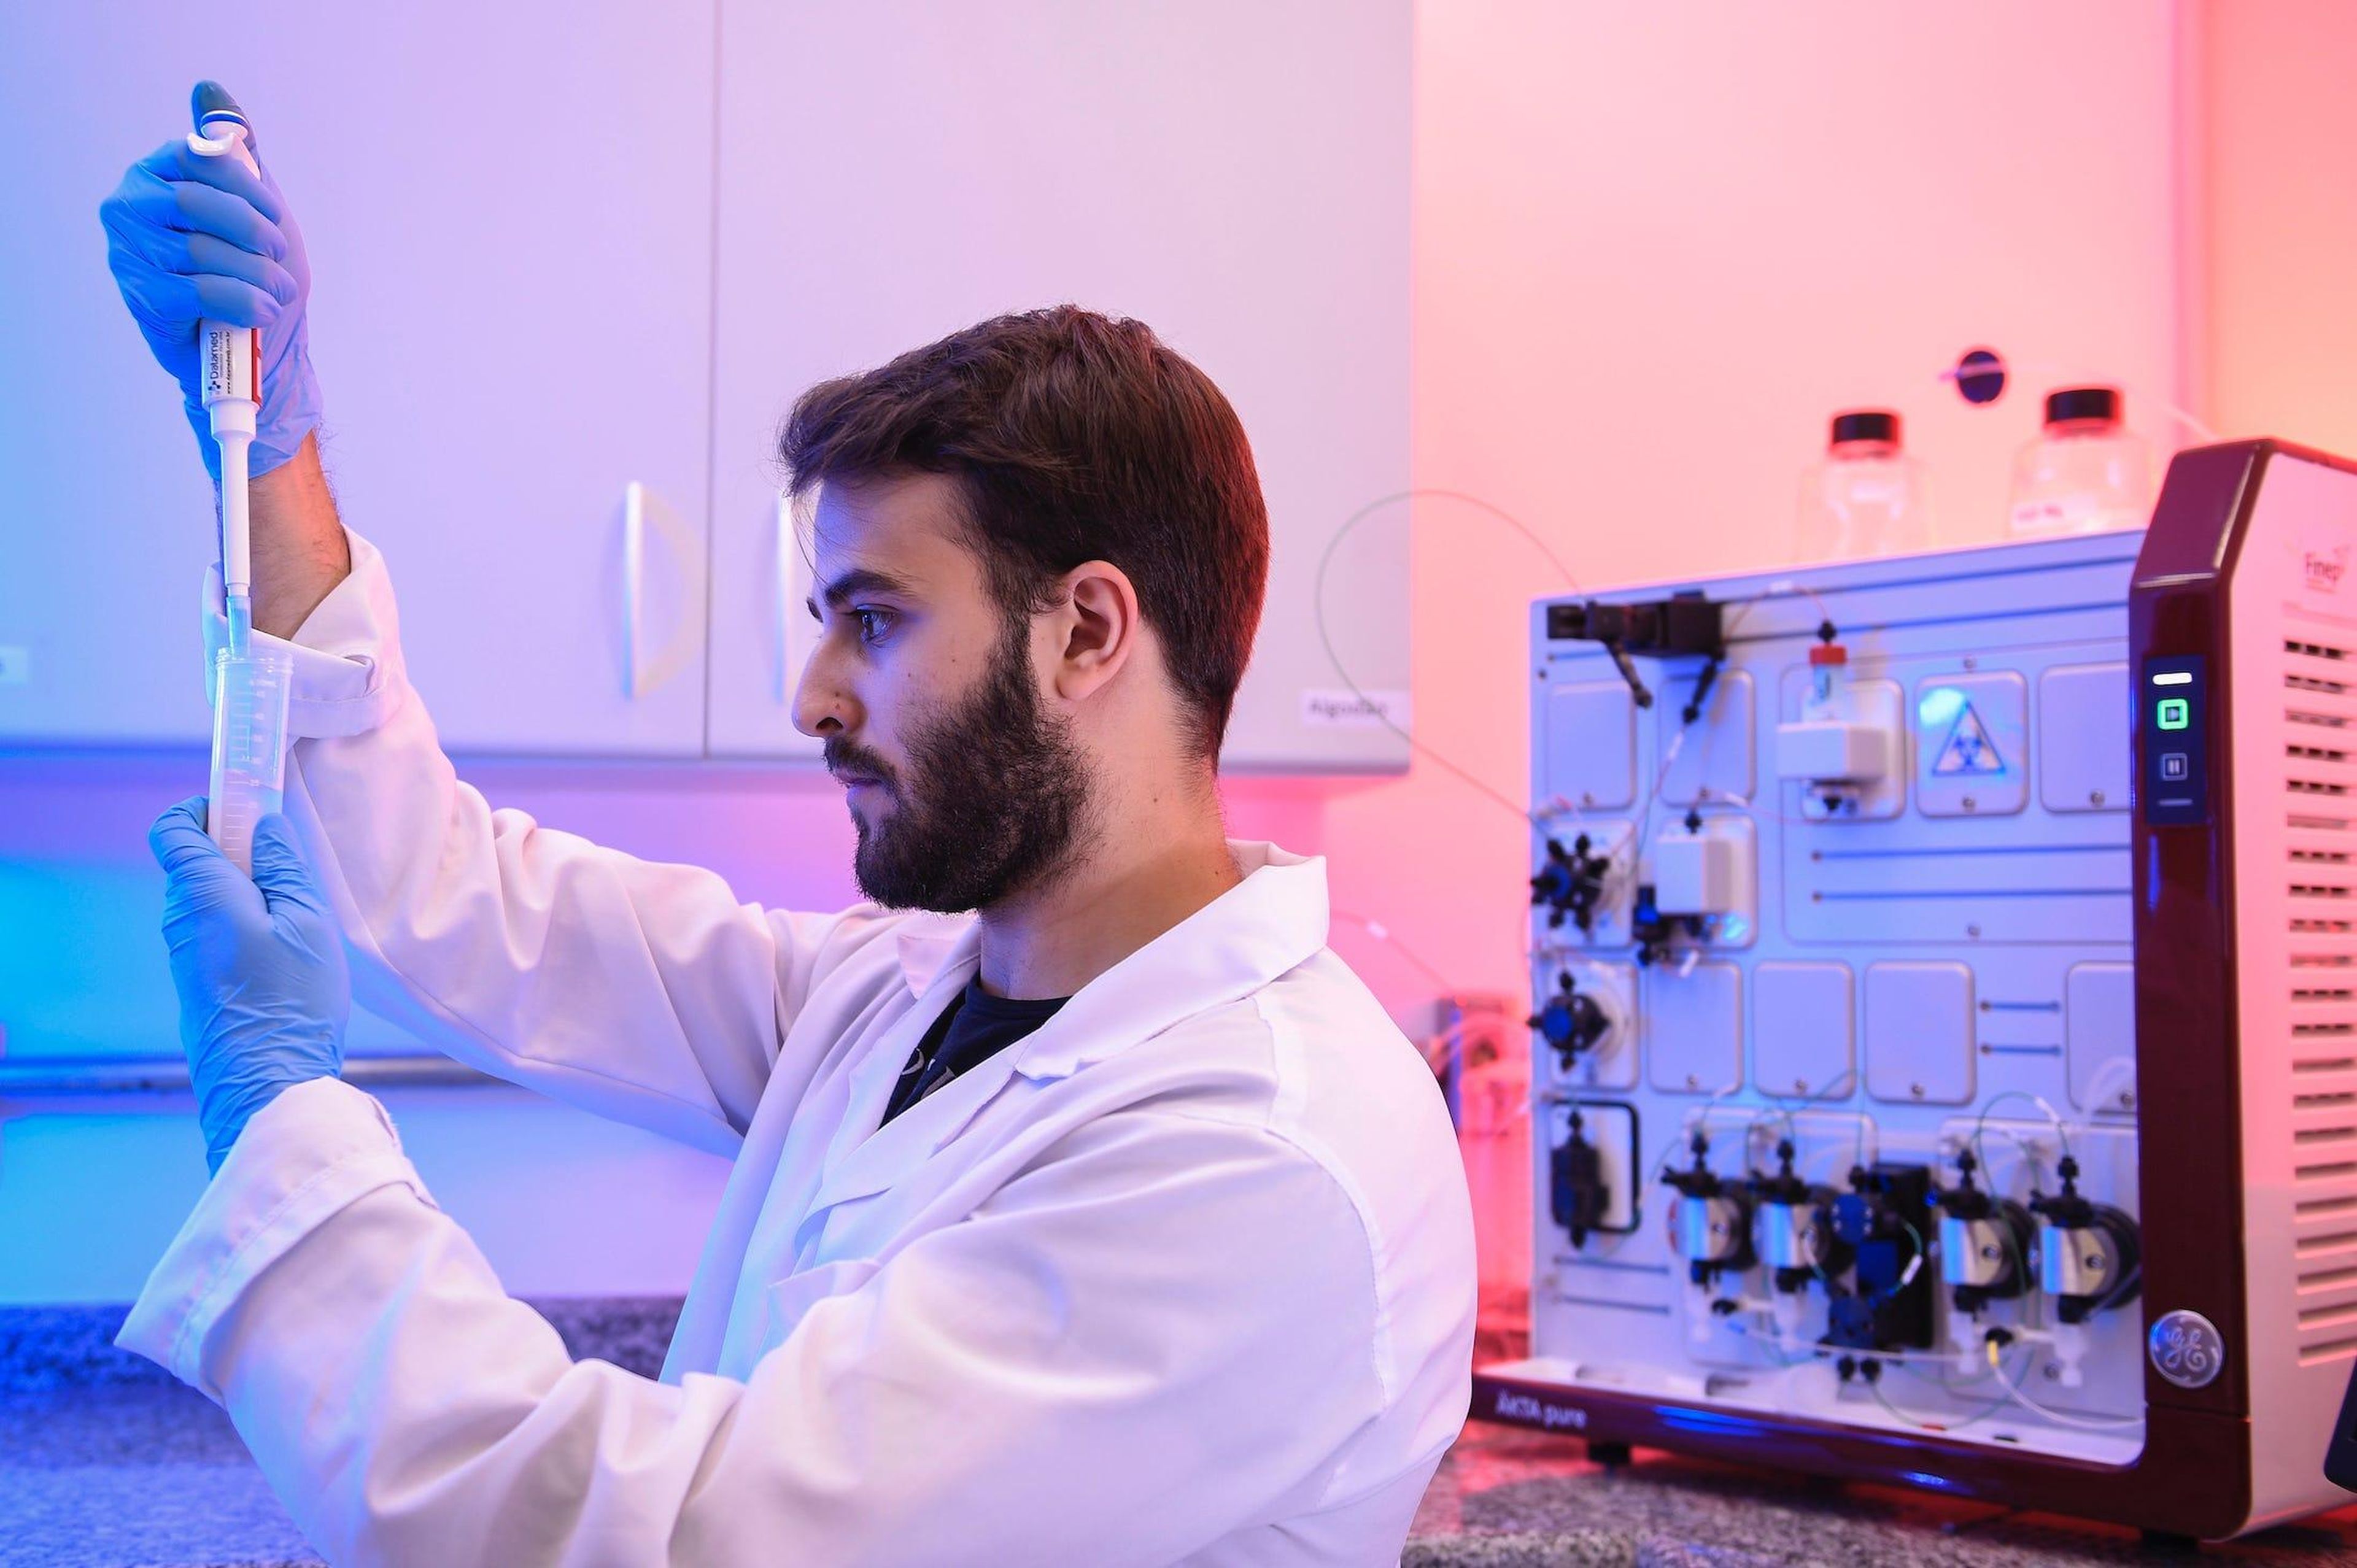 Un estudiante de ingeniería química trabaja con una prueba relacionada con la producción de vacunas contra el coronavirus el 24 de marzo en Belo Horizonte, Brasil.